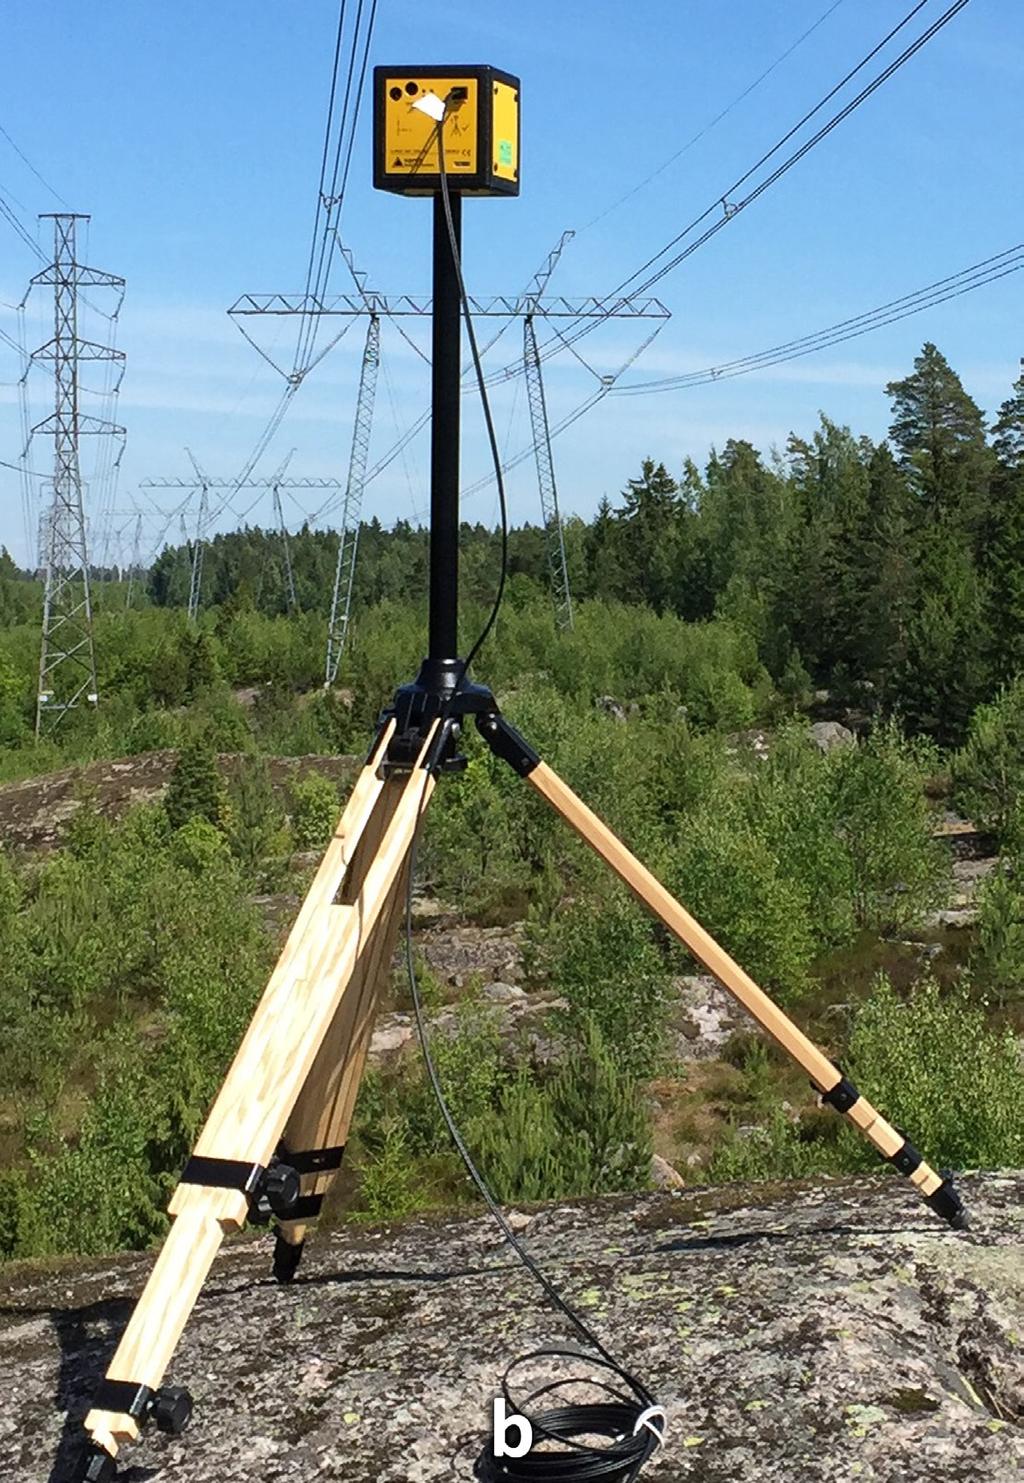 mittausta varten. (Kuva: Lauri Puranen, STUK) 4.2 Mittaustulokset Sähkökentän voimakkuus mitattiin kahdessa mittauspaikassa 400 kv voimajohdon alla.